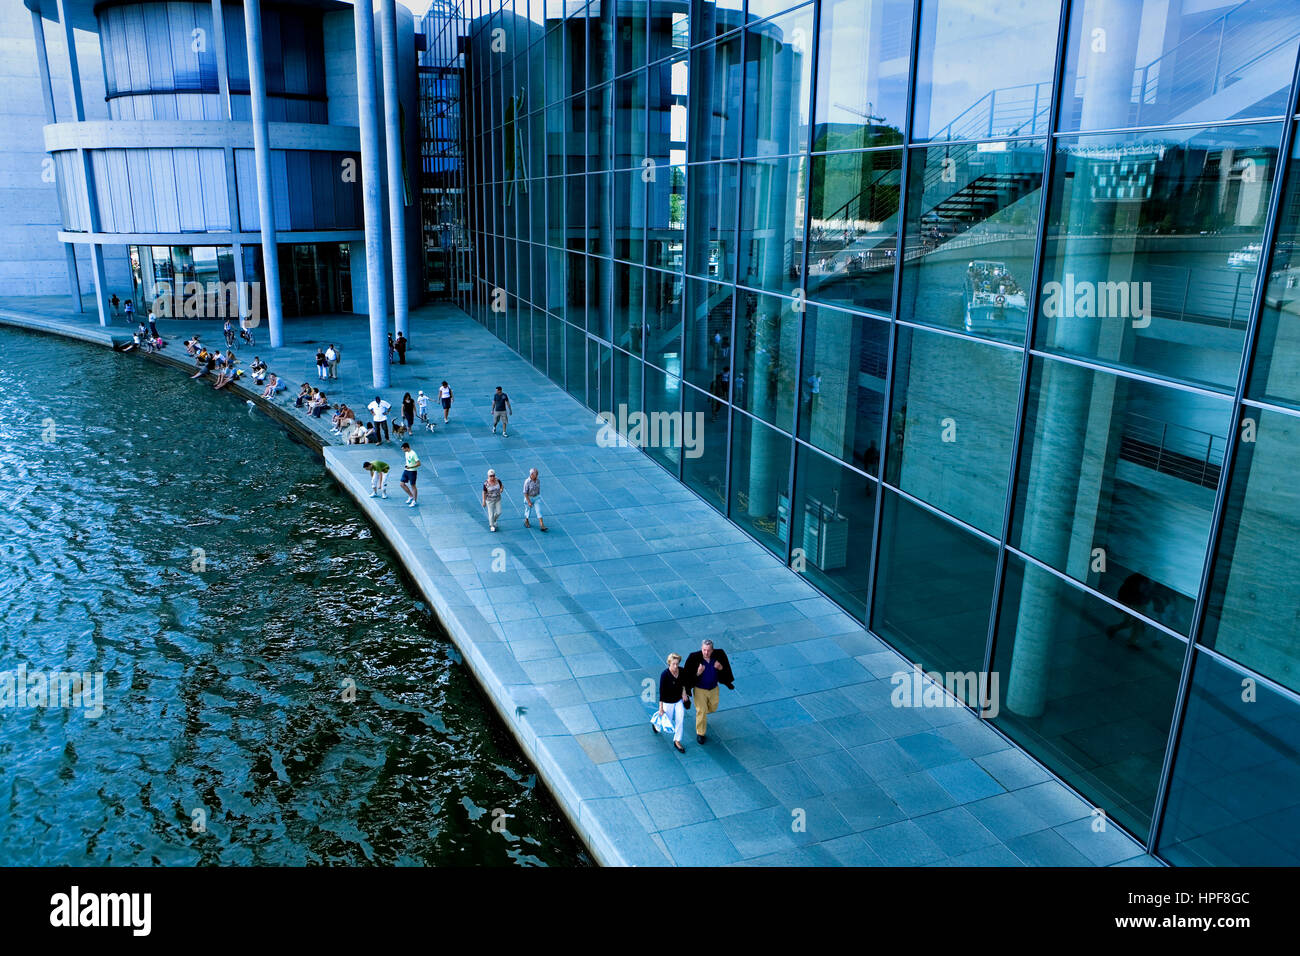 La rivière Spree. Paul Löbe par Stephan Braunfels.Il présente plusieurs bureaux du Bundestag.de Berlin. Allemagne Banque D'Images